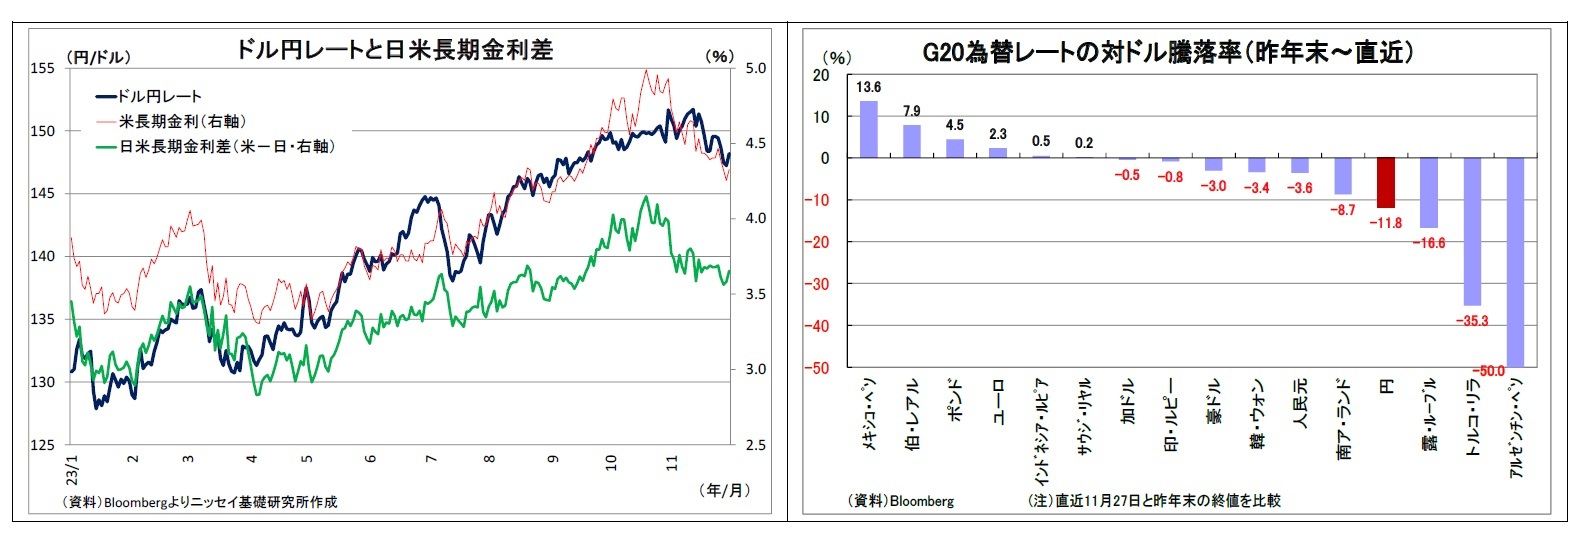 ドル円レートと日米長期金利差/G20為替レートの対ドル騰落率（昨年末～直近）